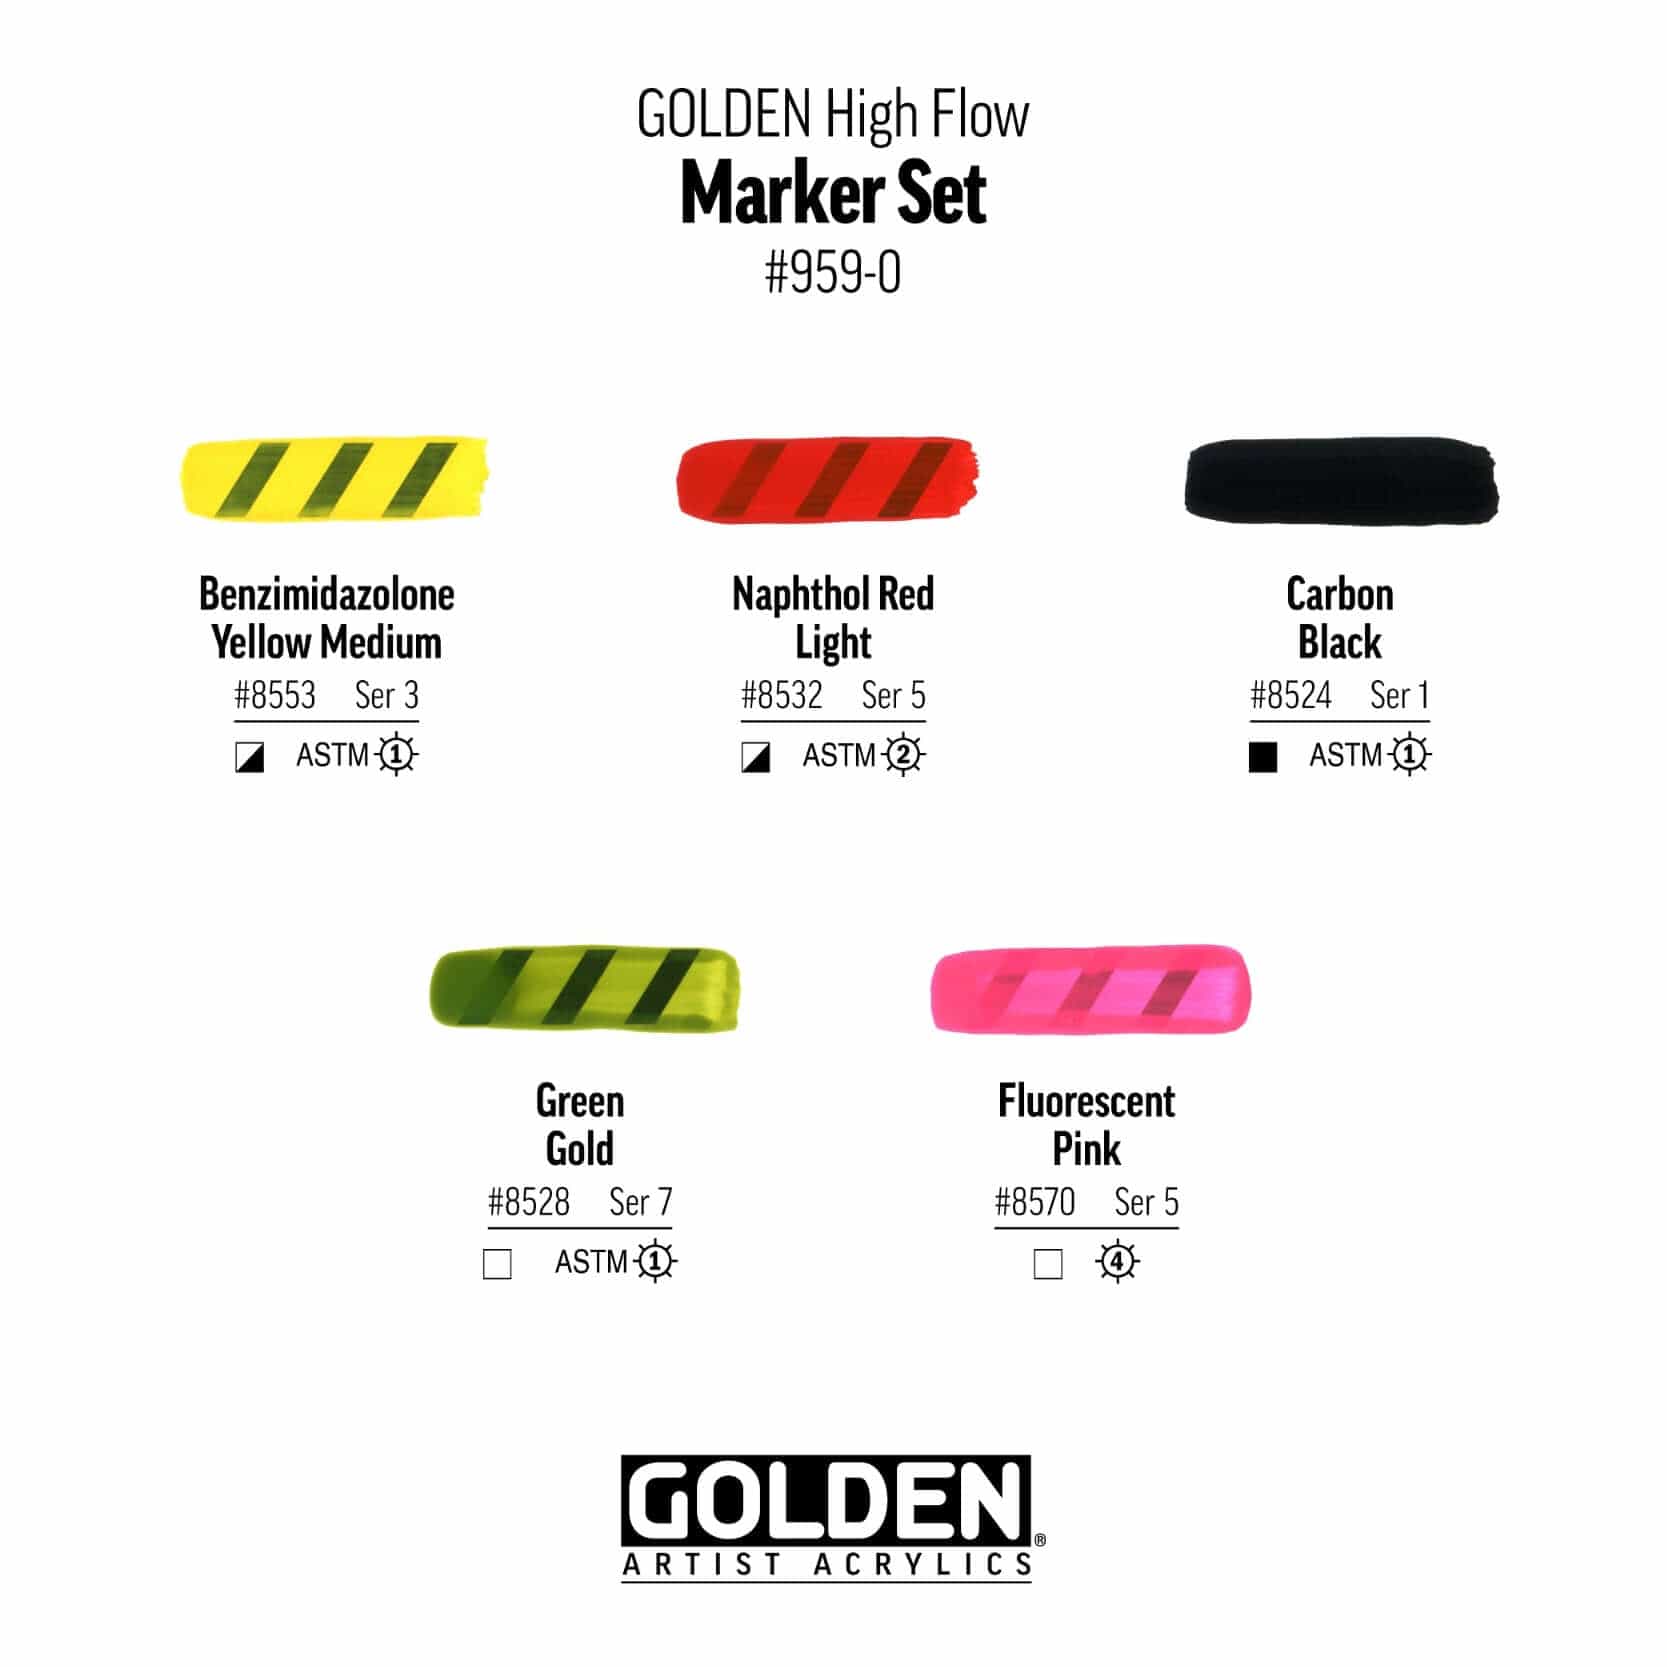 Golden Akrylmaling Golden Highflow sæt 959 med 3 tomme markere